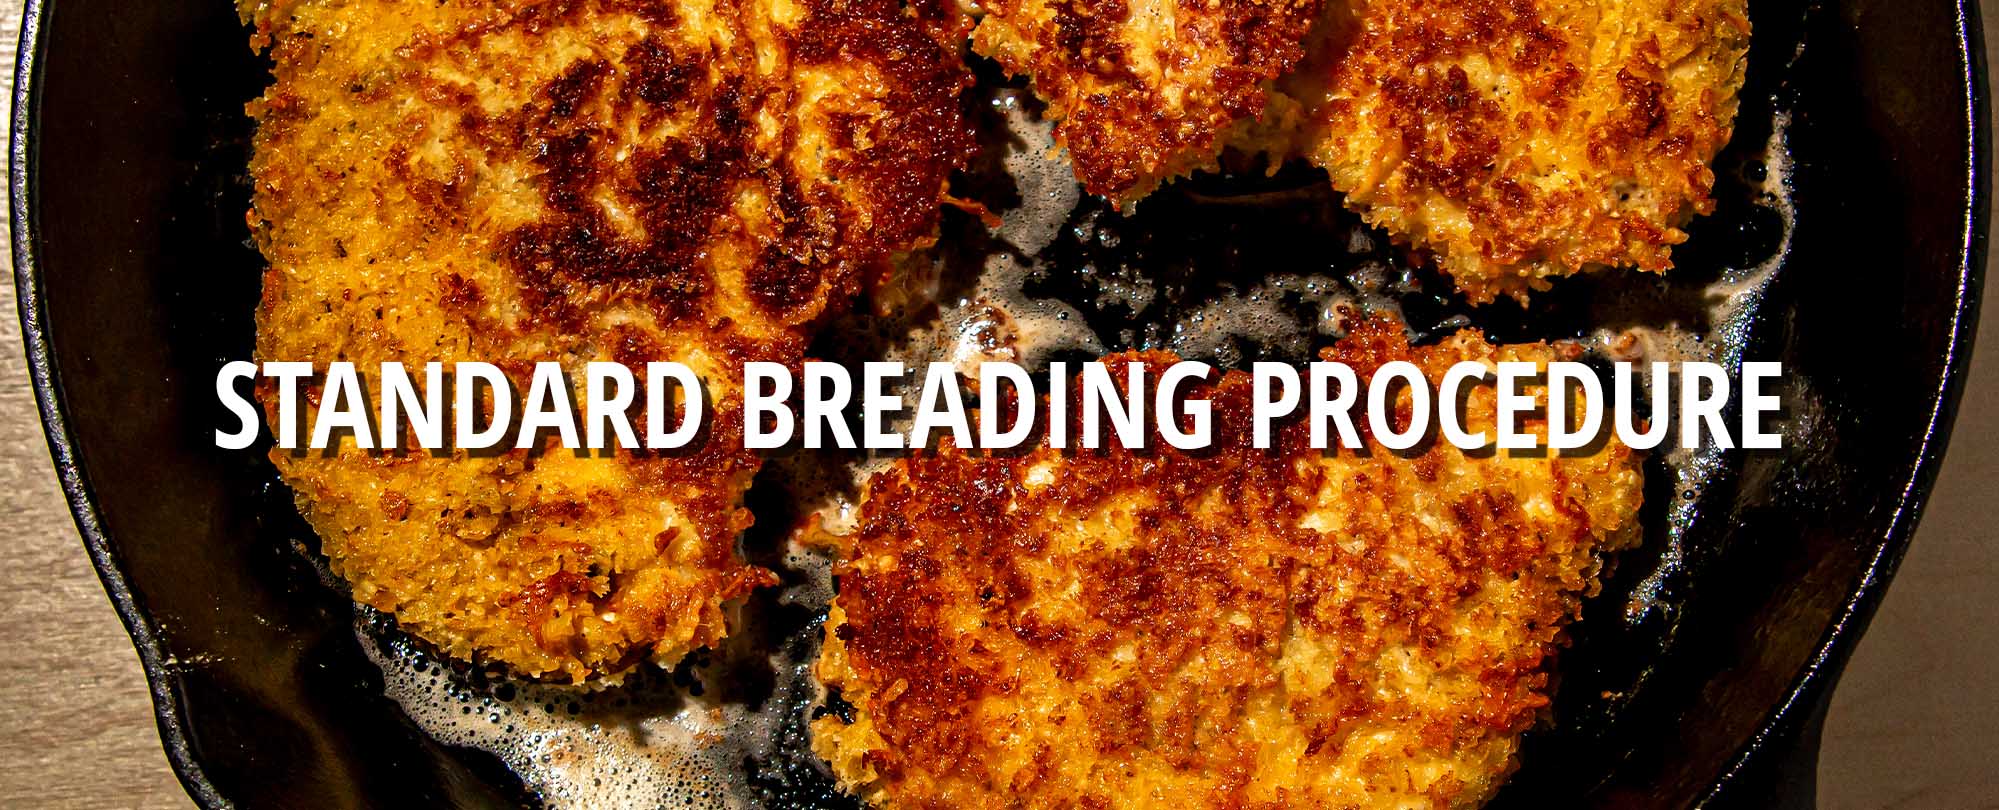 Standard Breading Procedure